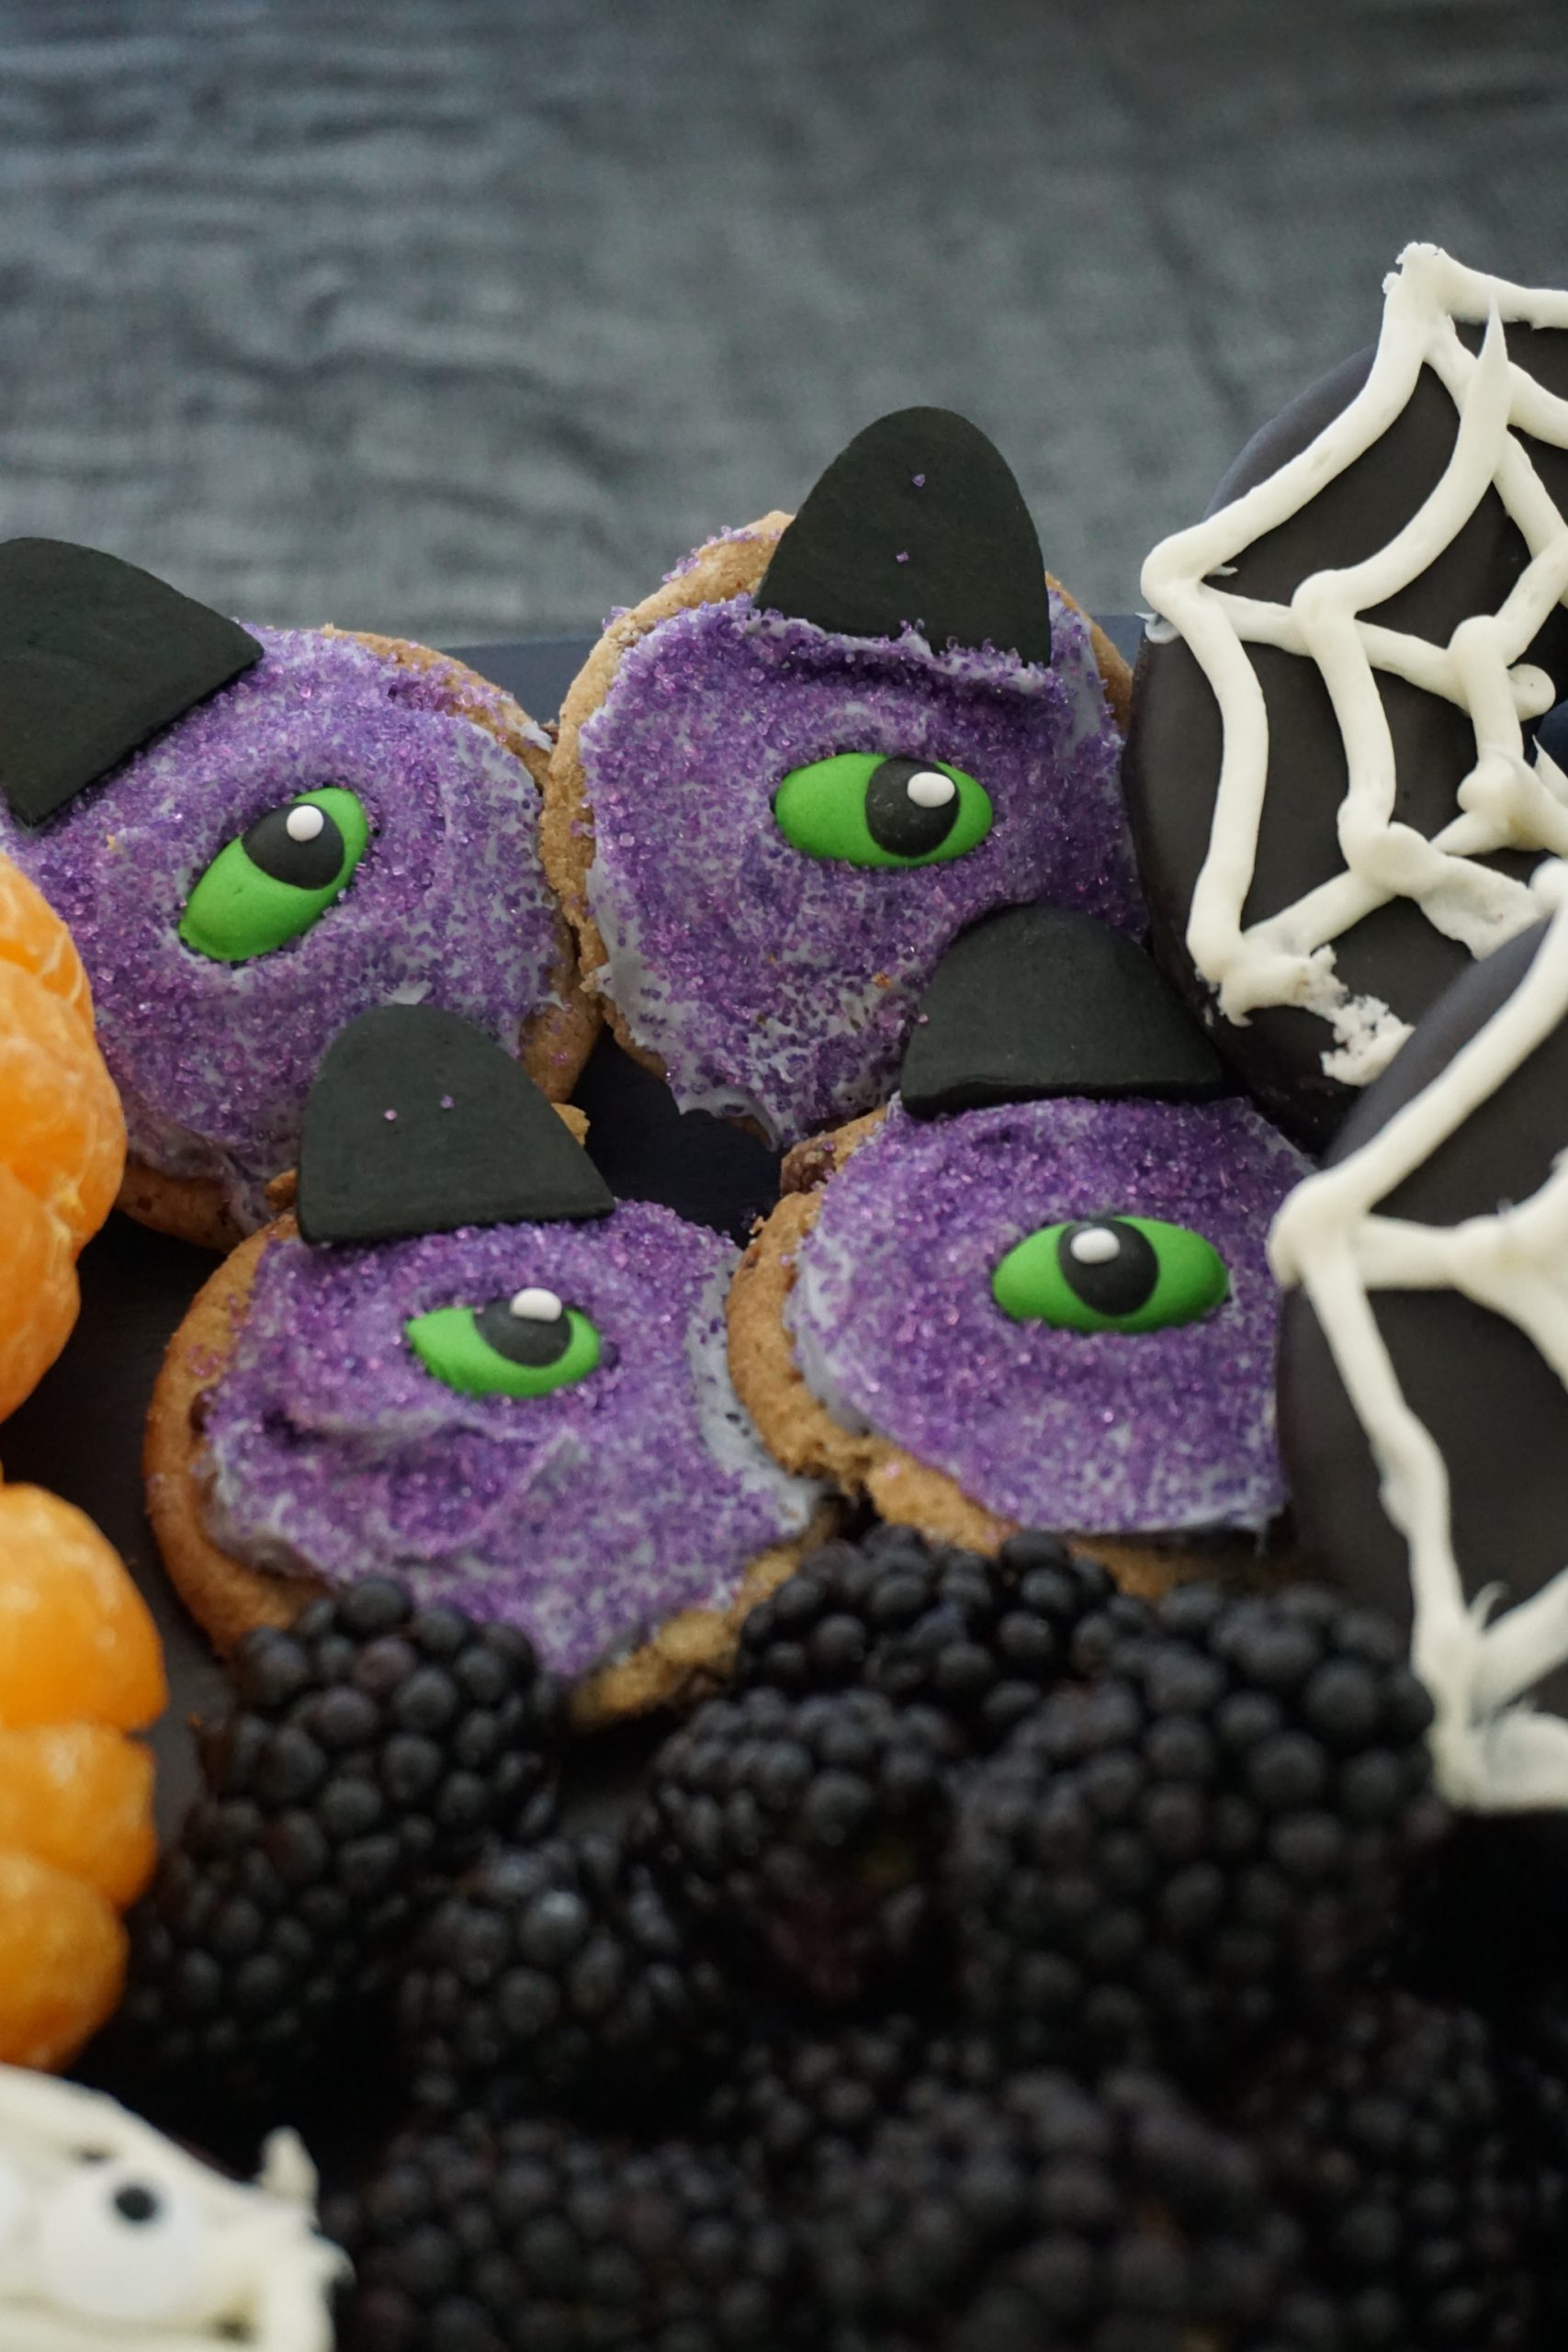 Halloween cookies, one-eyed one-horned purple people eater cookies